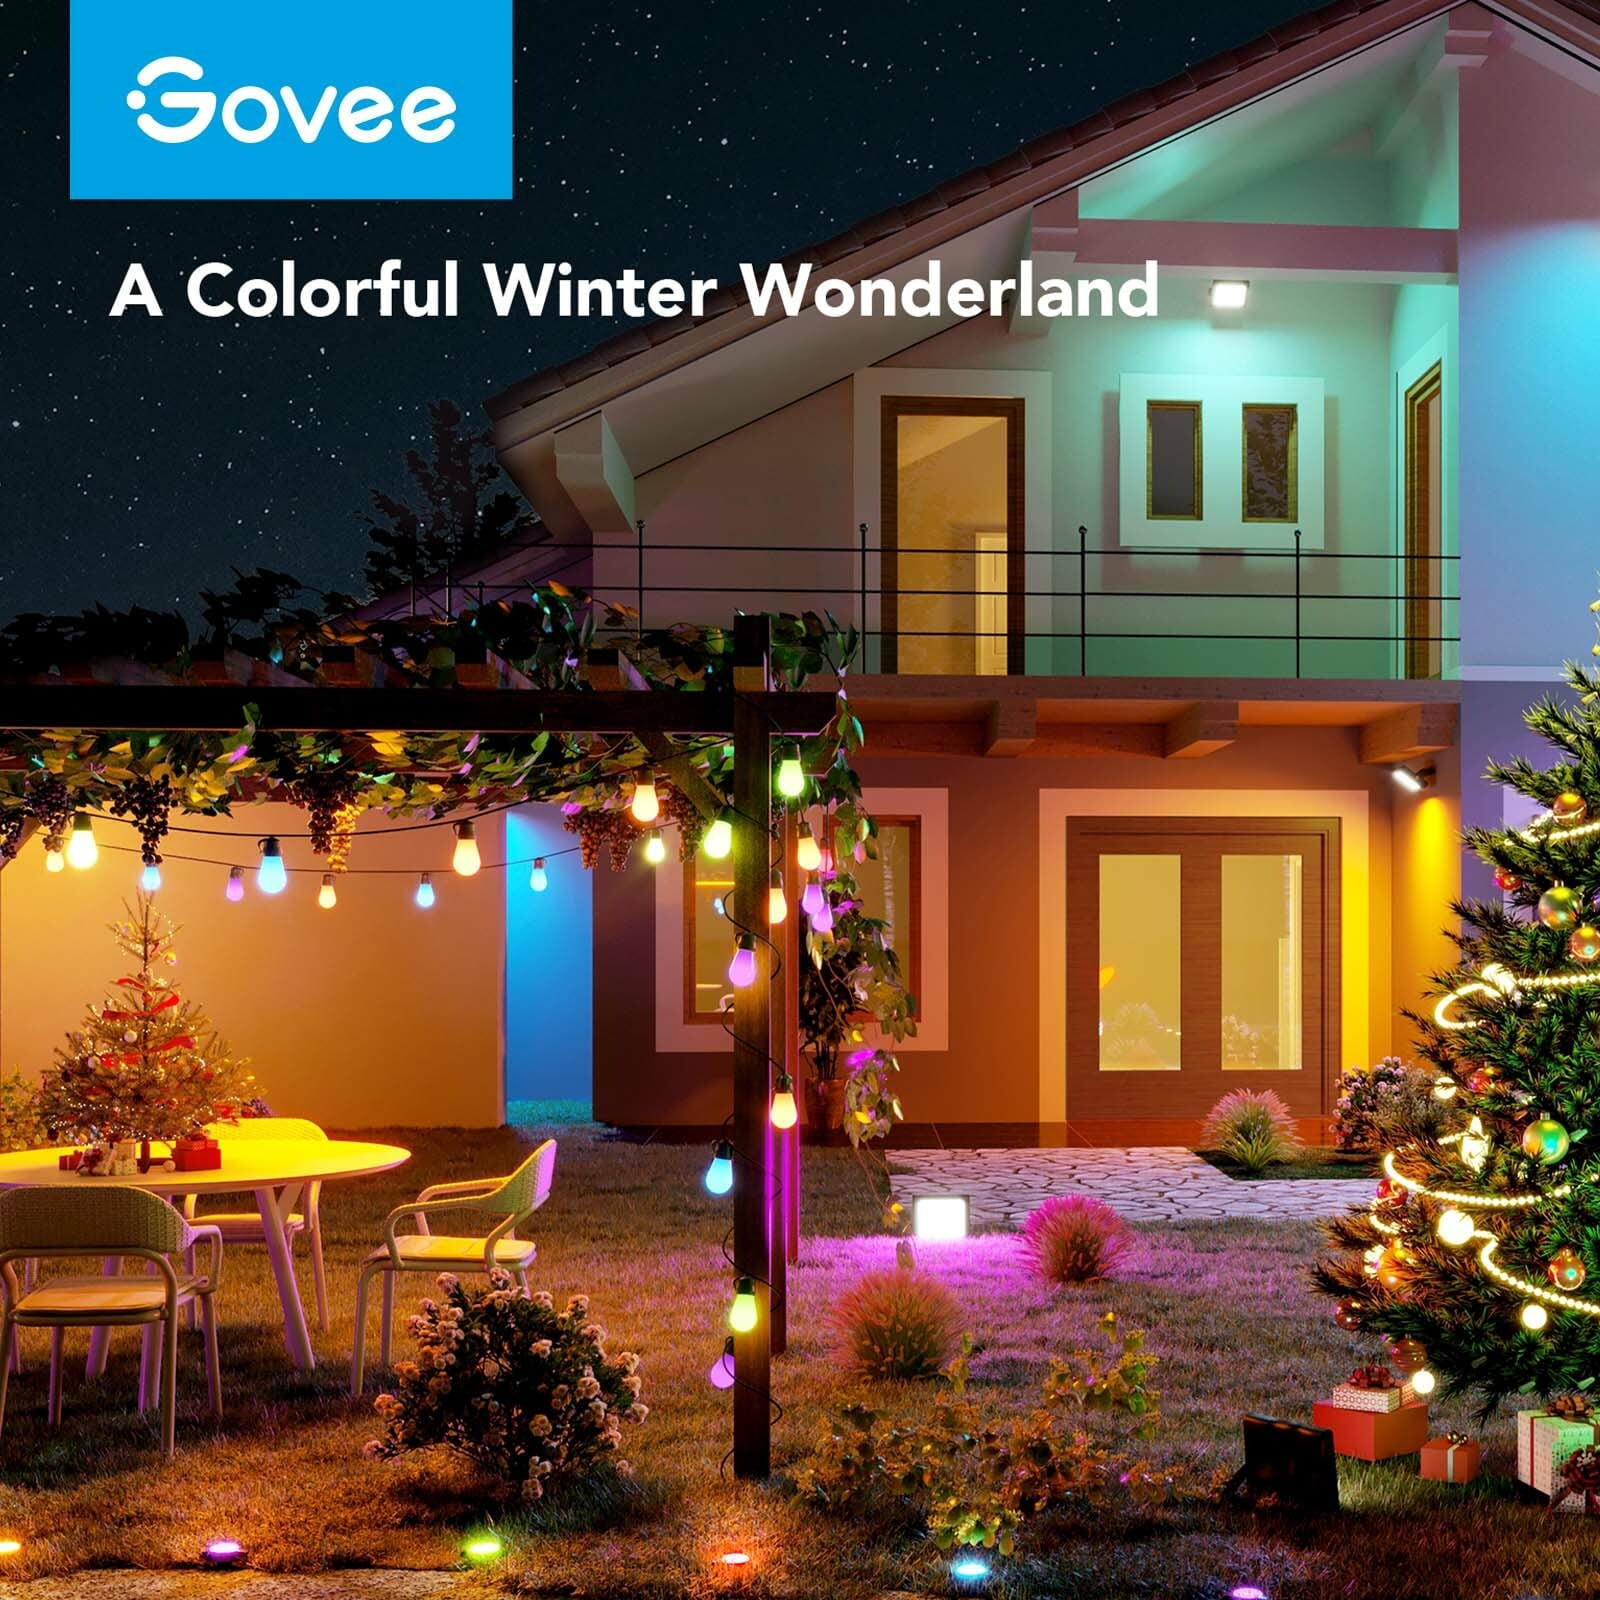 Govee Christmas String Lights - Govee